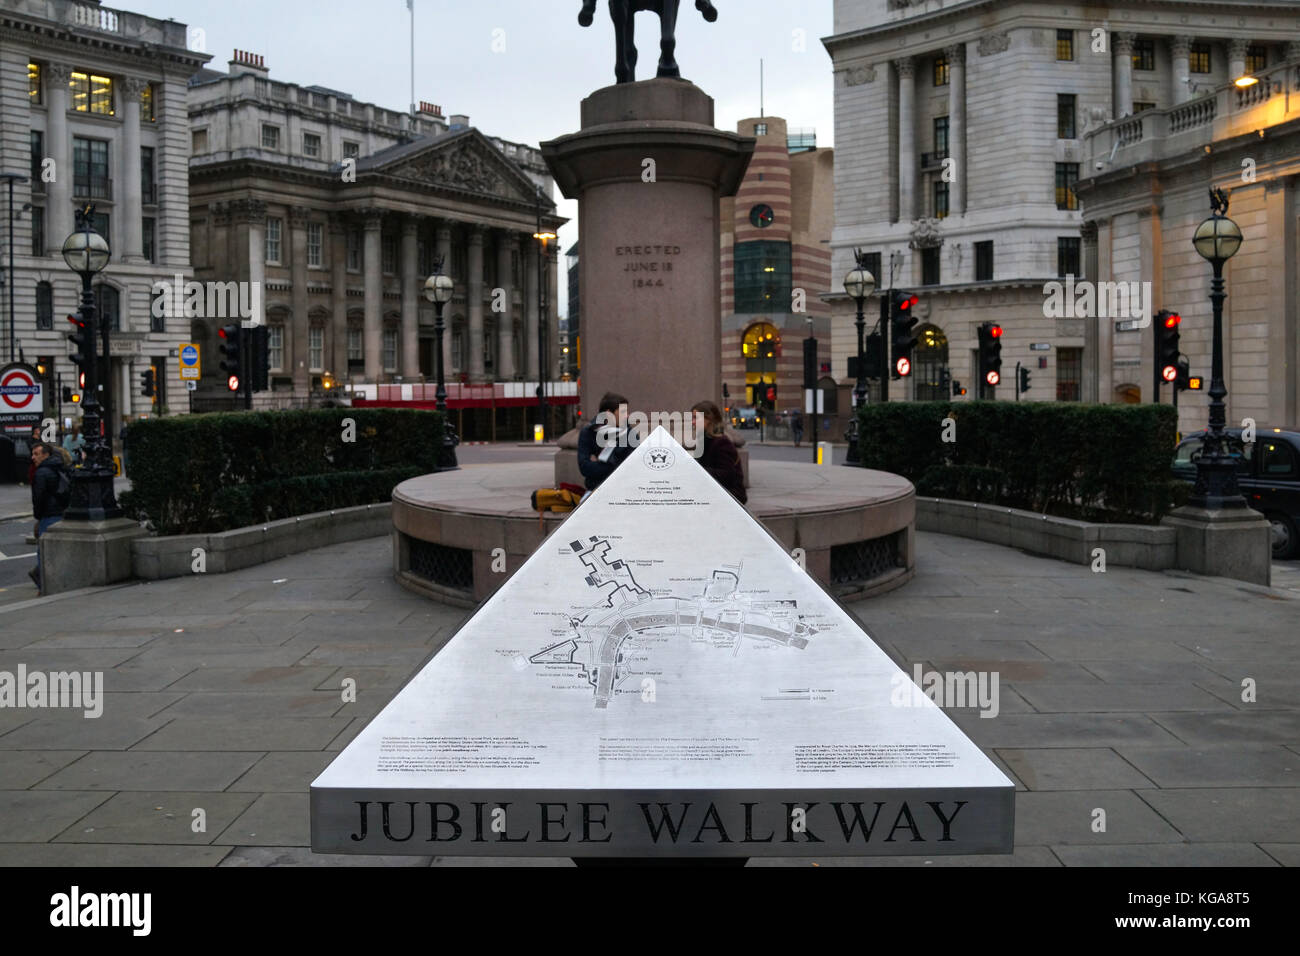 Jubilee Walkway sign, London Stock Photo